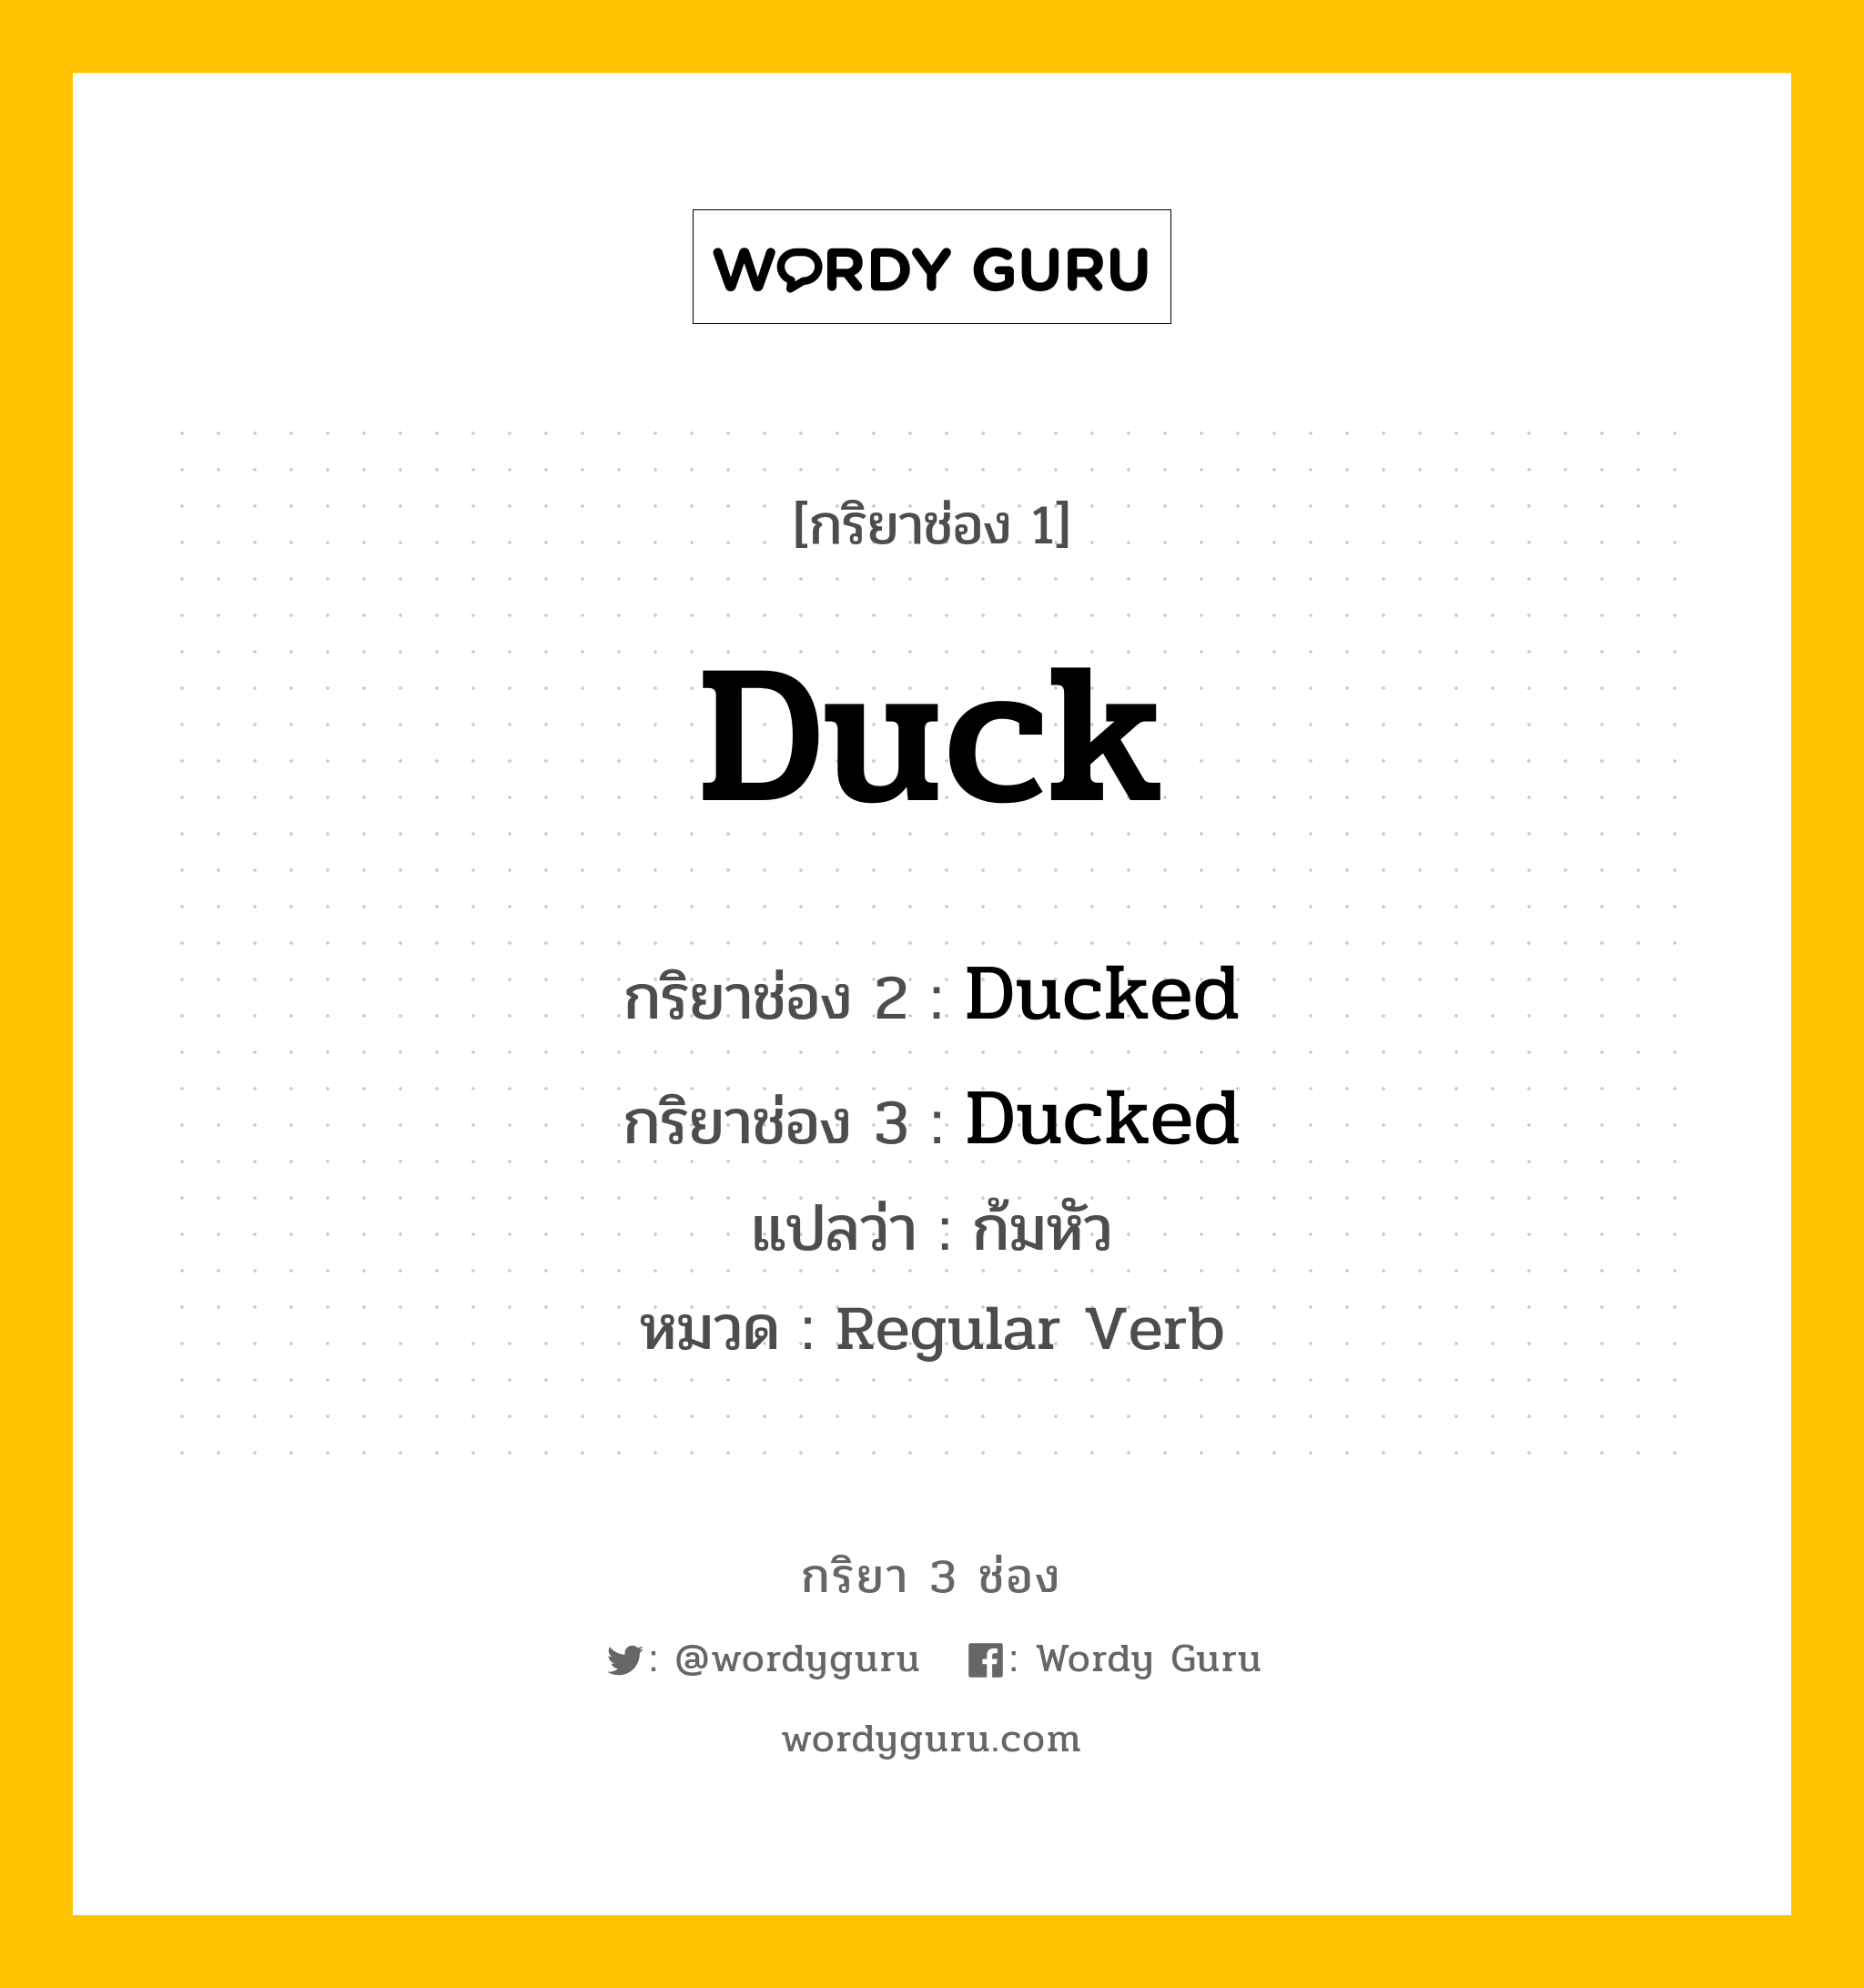 กริยา 3 ช่อง: Duck ช่อง 2 Duck ช่อง 3 คืออะไร, กริยาช่อง 1 Duck กริยาช่อง 2 Ducked กริยาช่อง 3 Ducked แปลว่า ก้มหัว หมวด Regular Verb หมวด Regular Verb